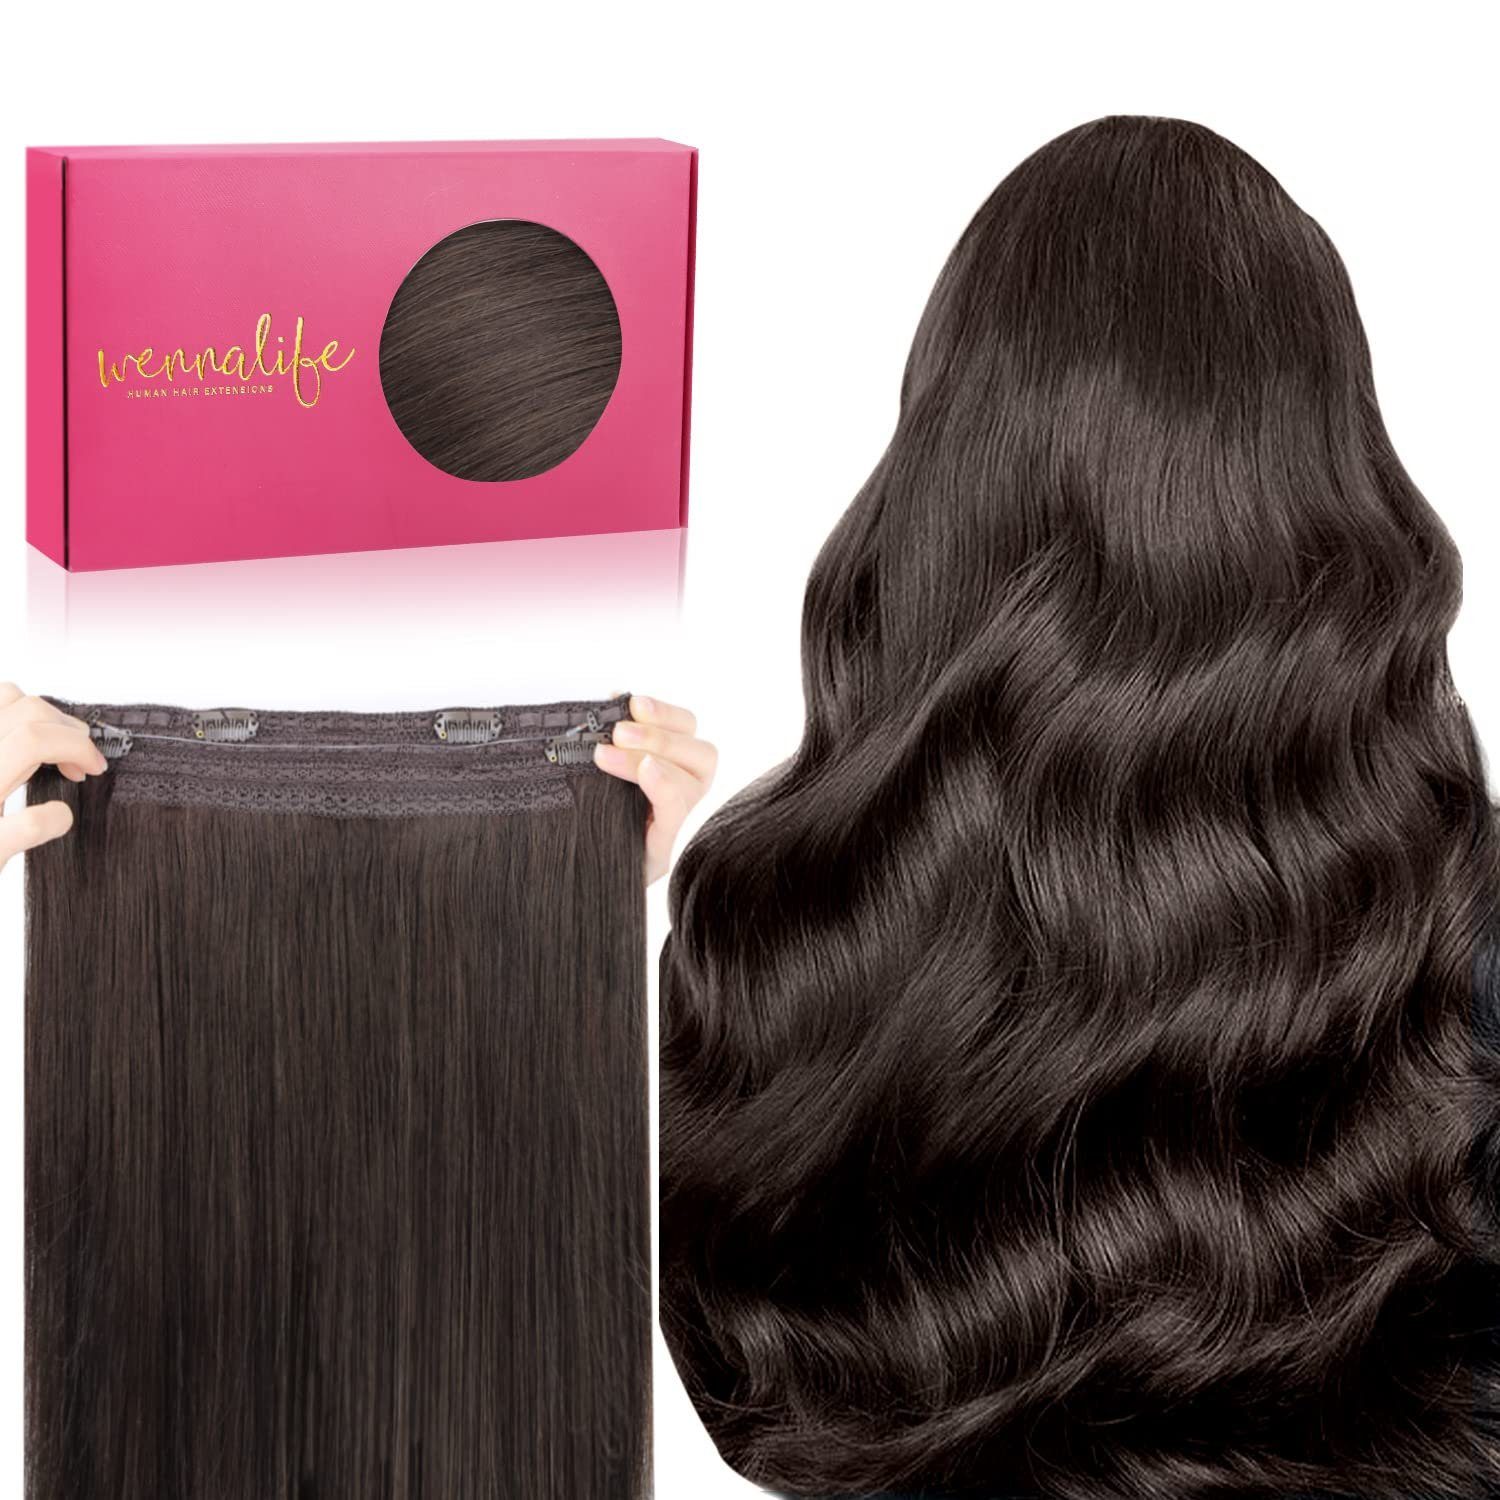 Wennalife Echthaar-Extension »100 % Echthaarverlängerungen, Halo-Haare,  lange glatte Haarteile für Frauen, neu dunkelbraun« online kaufen | OTTO